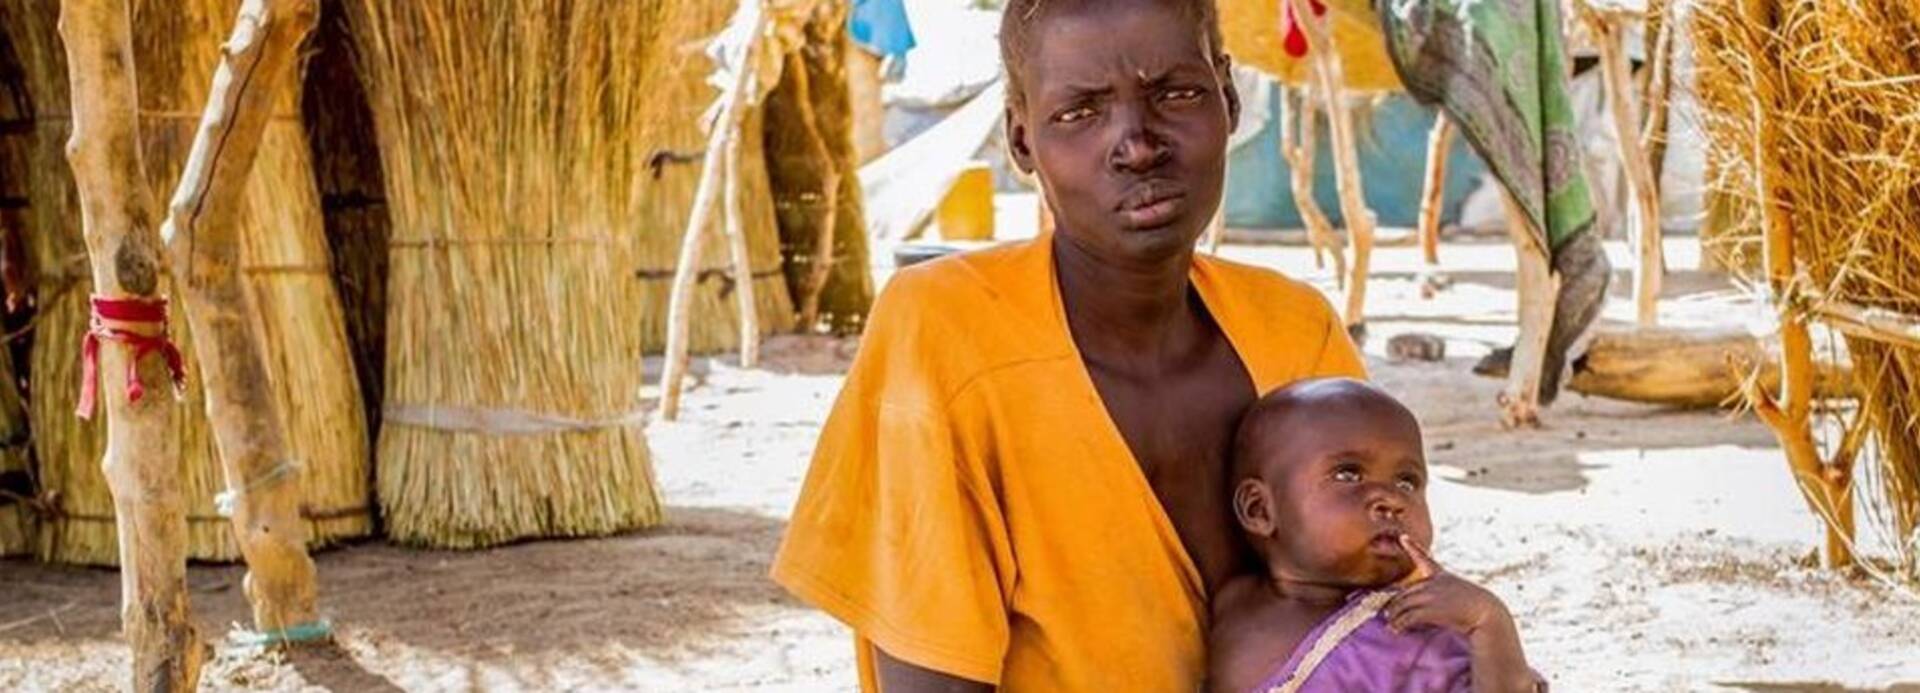 Mutter und Kind im Südsudan